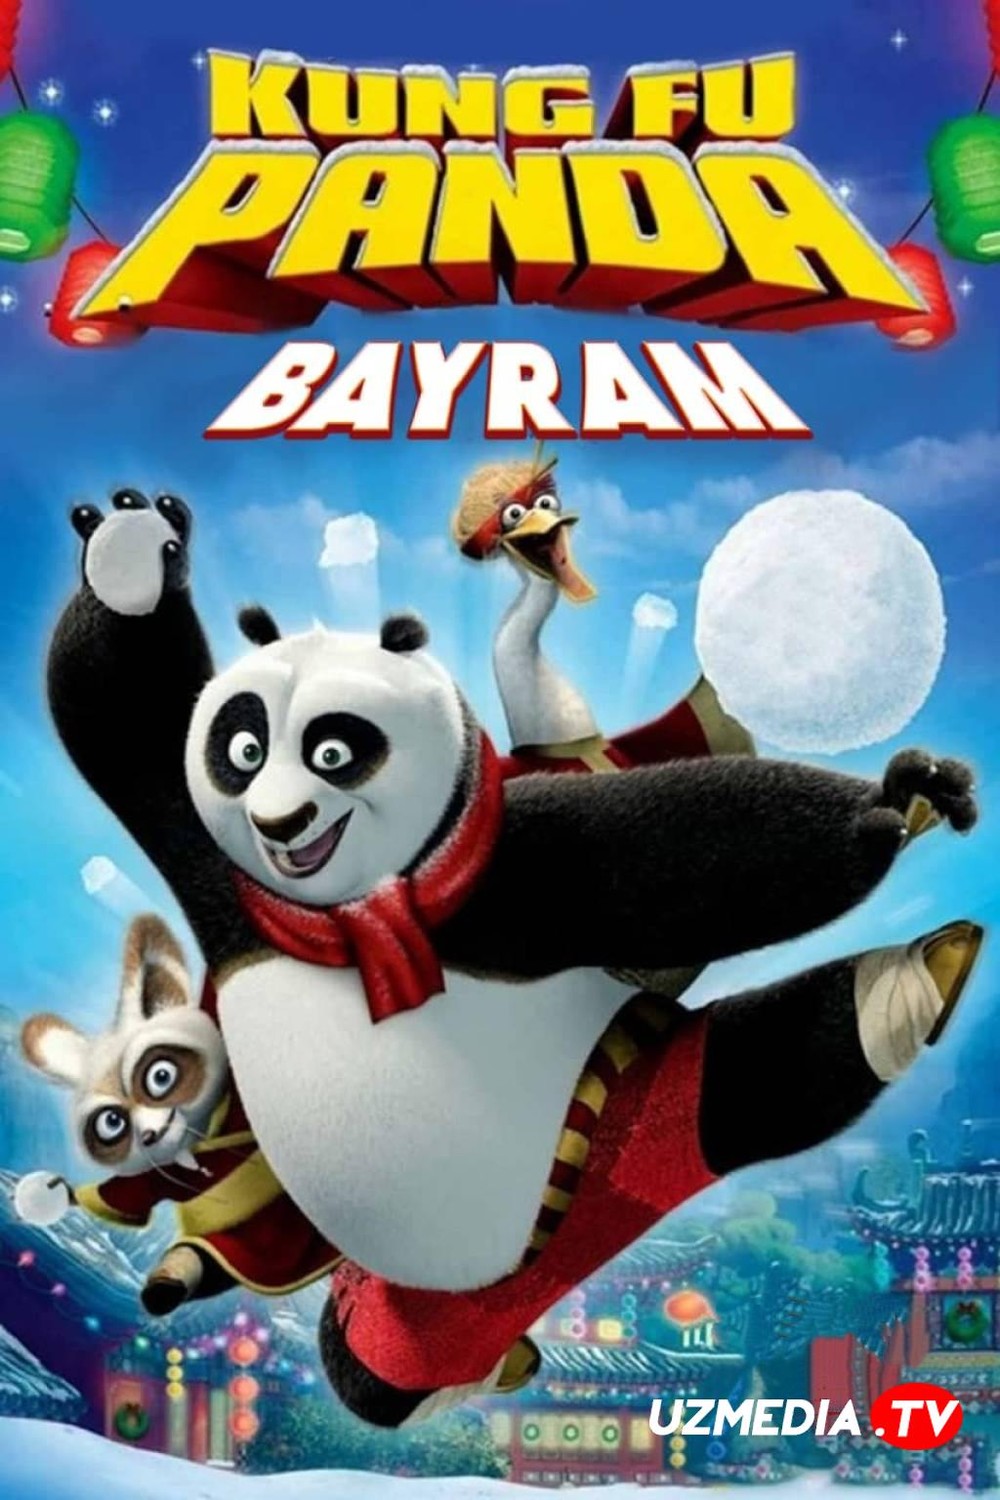 Kung-Fu Panda Bayram soni / Yangi yilingiz bilan! Multfilm Uzbek tilida tarjima 2010 Full HD O'zbek tilida tas-ix skachat